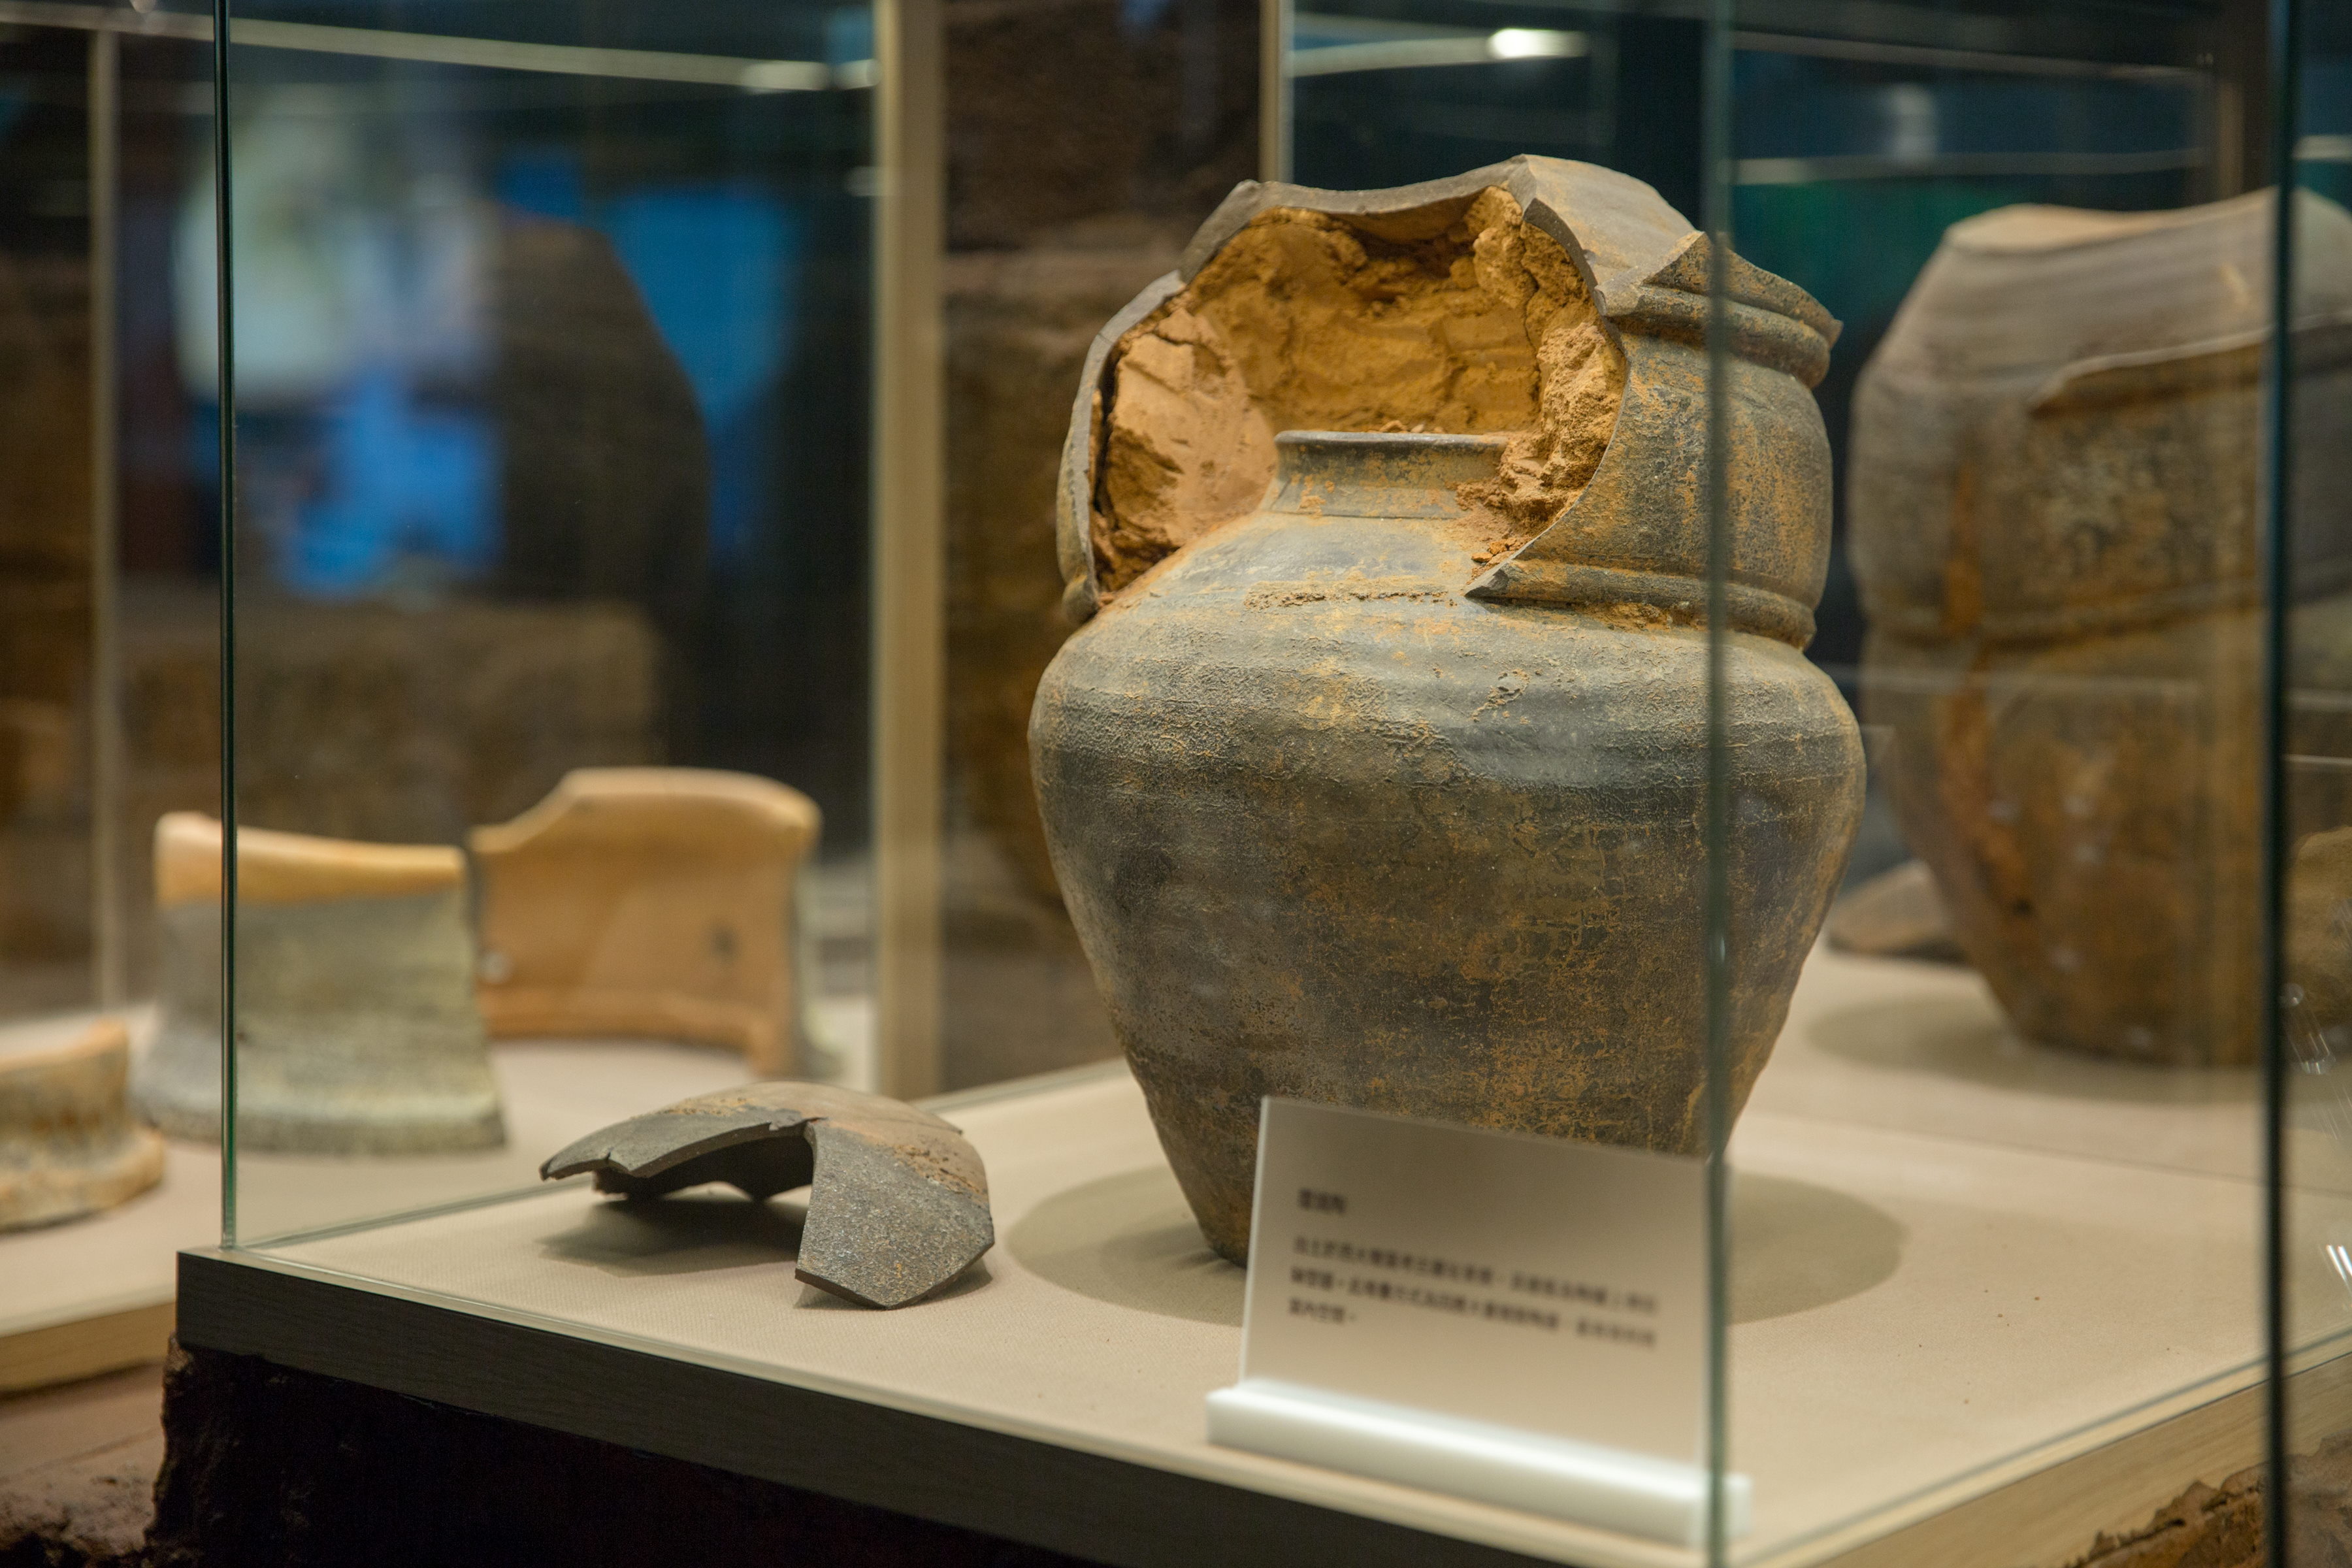 文化館保存、展示清代中晚期之西大墩窯遺址文物，圖中「覆燒陶」即為西大墩窯出土之代表性文物